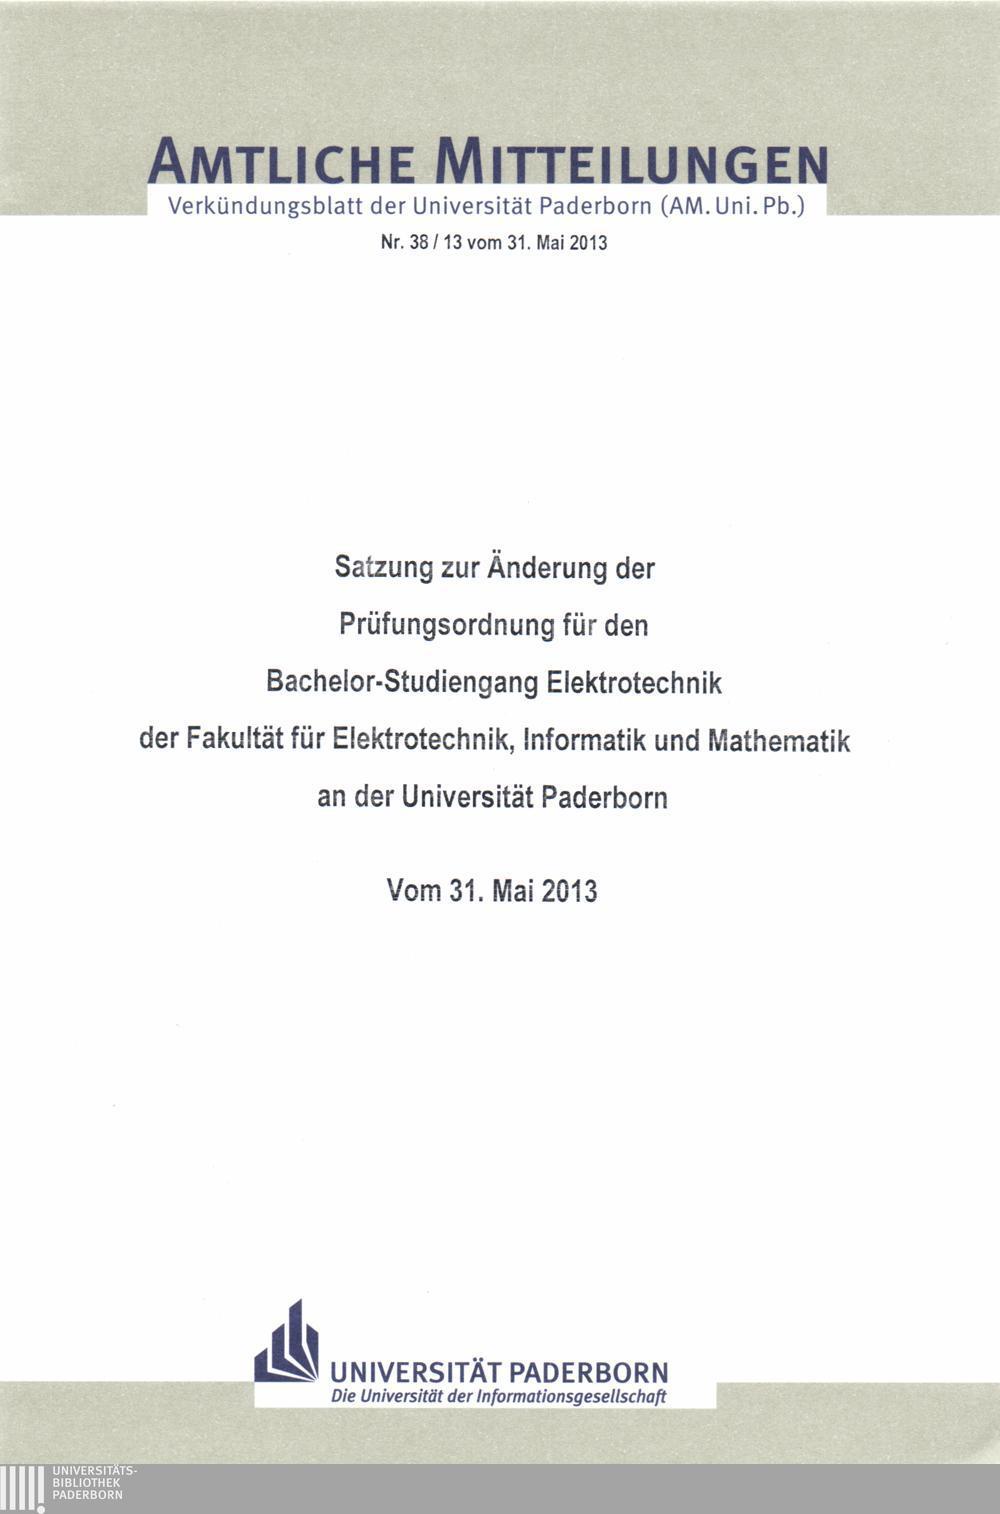 Amtliche Mitteilungen Verkündungsblatt der Universität Paderborn (AM. Uni. Pb.) Nr. 38/13 vom 31.